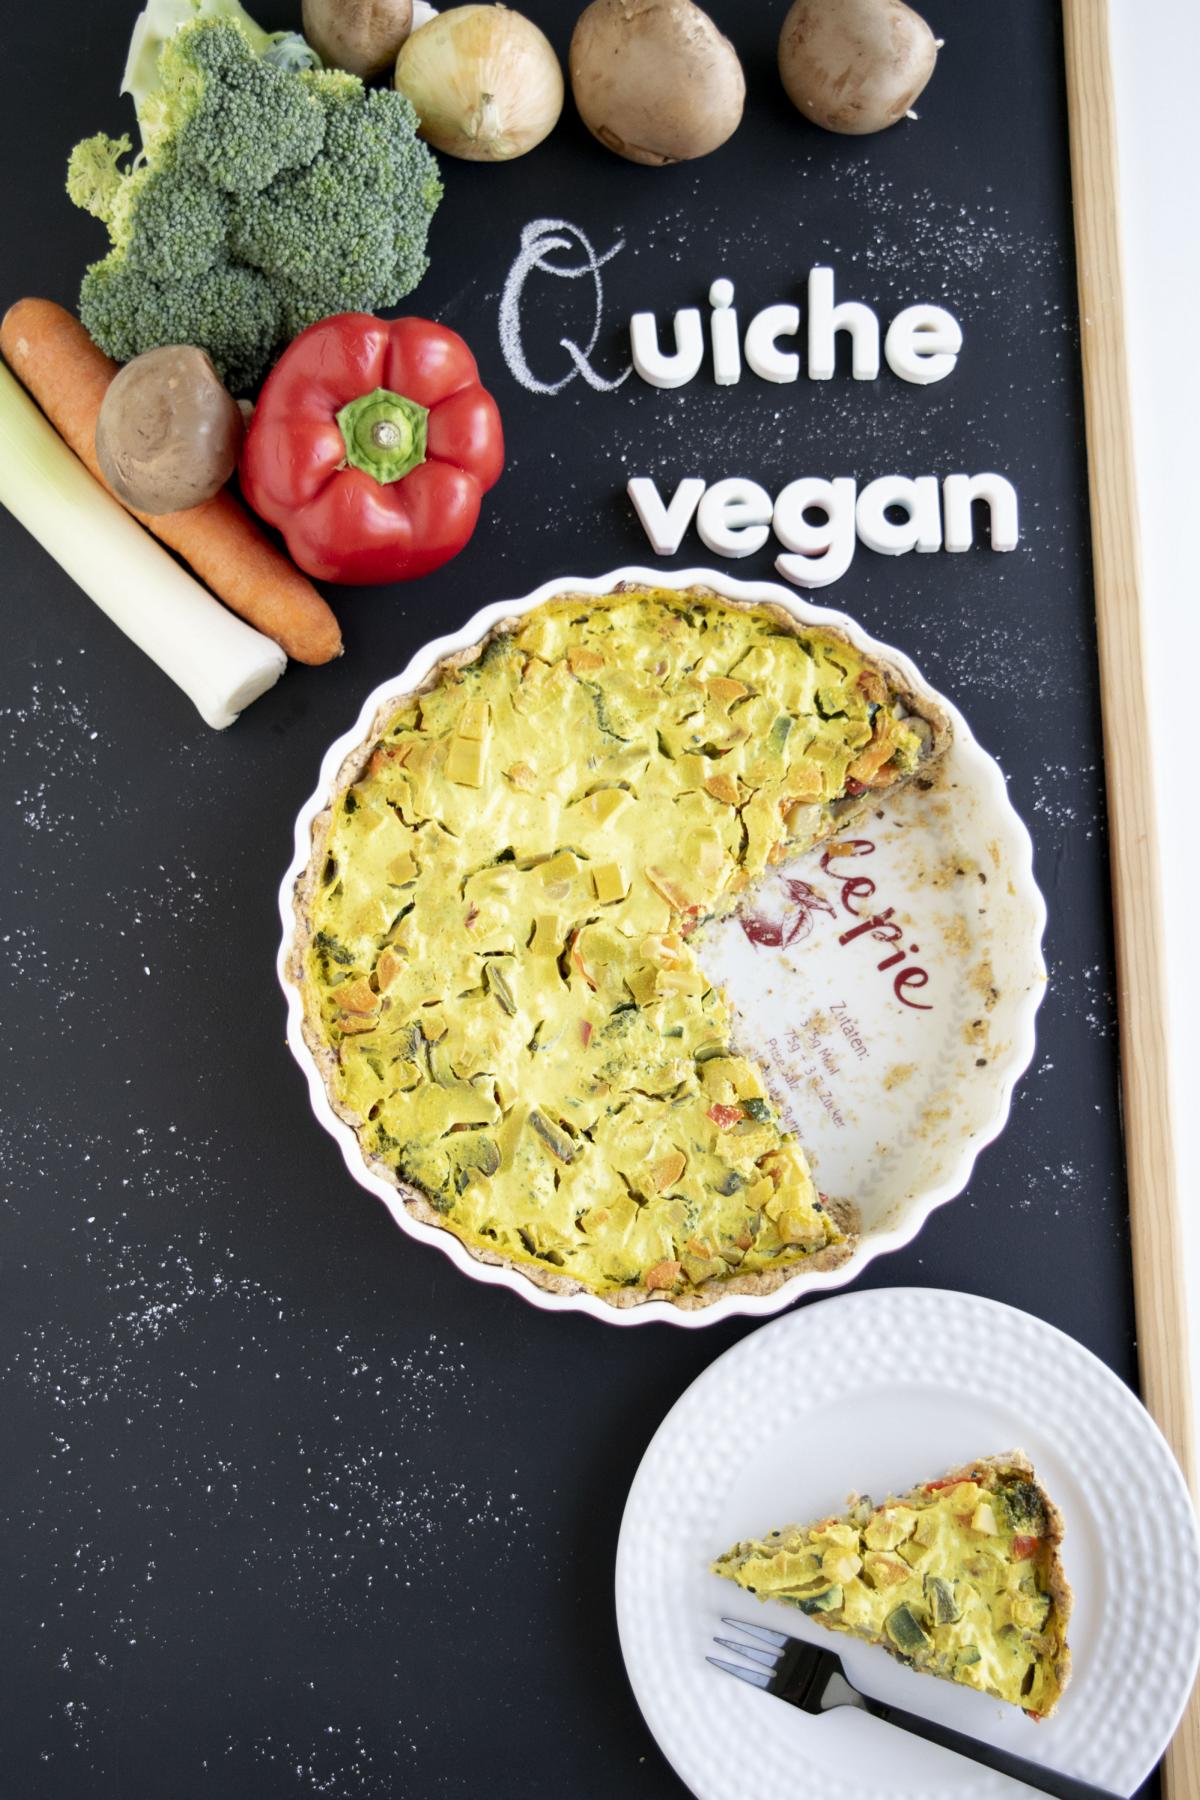 vegane & proteinreiche Gemüsequiche mit Dinkelvollkornmehl, gemüsequiche, quiche, veganequiche, wähe, waie, gemüsewaie, fraujanik